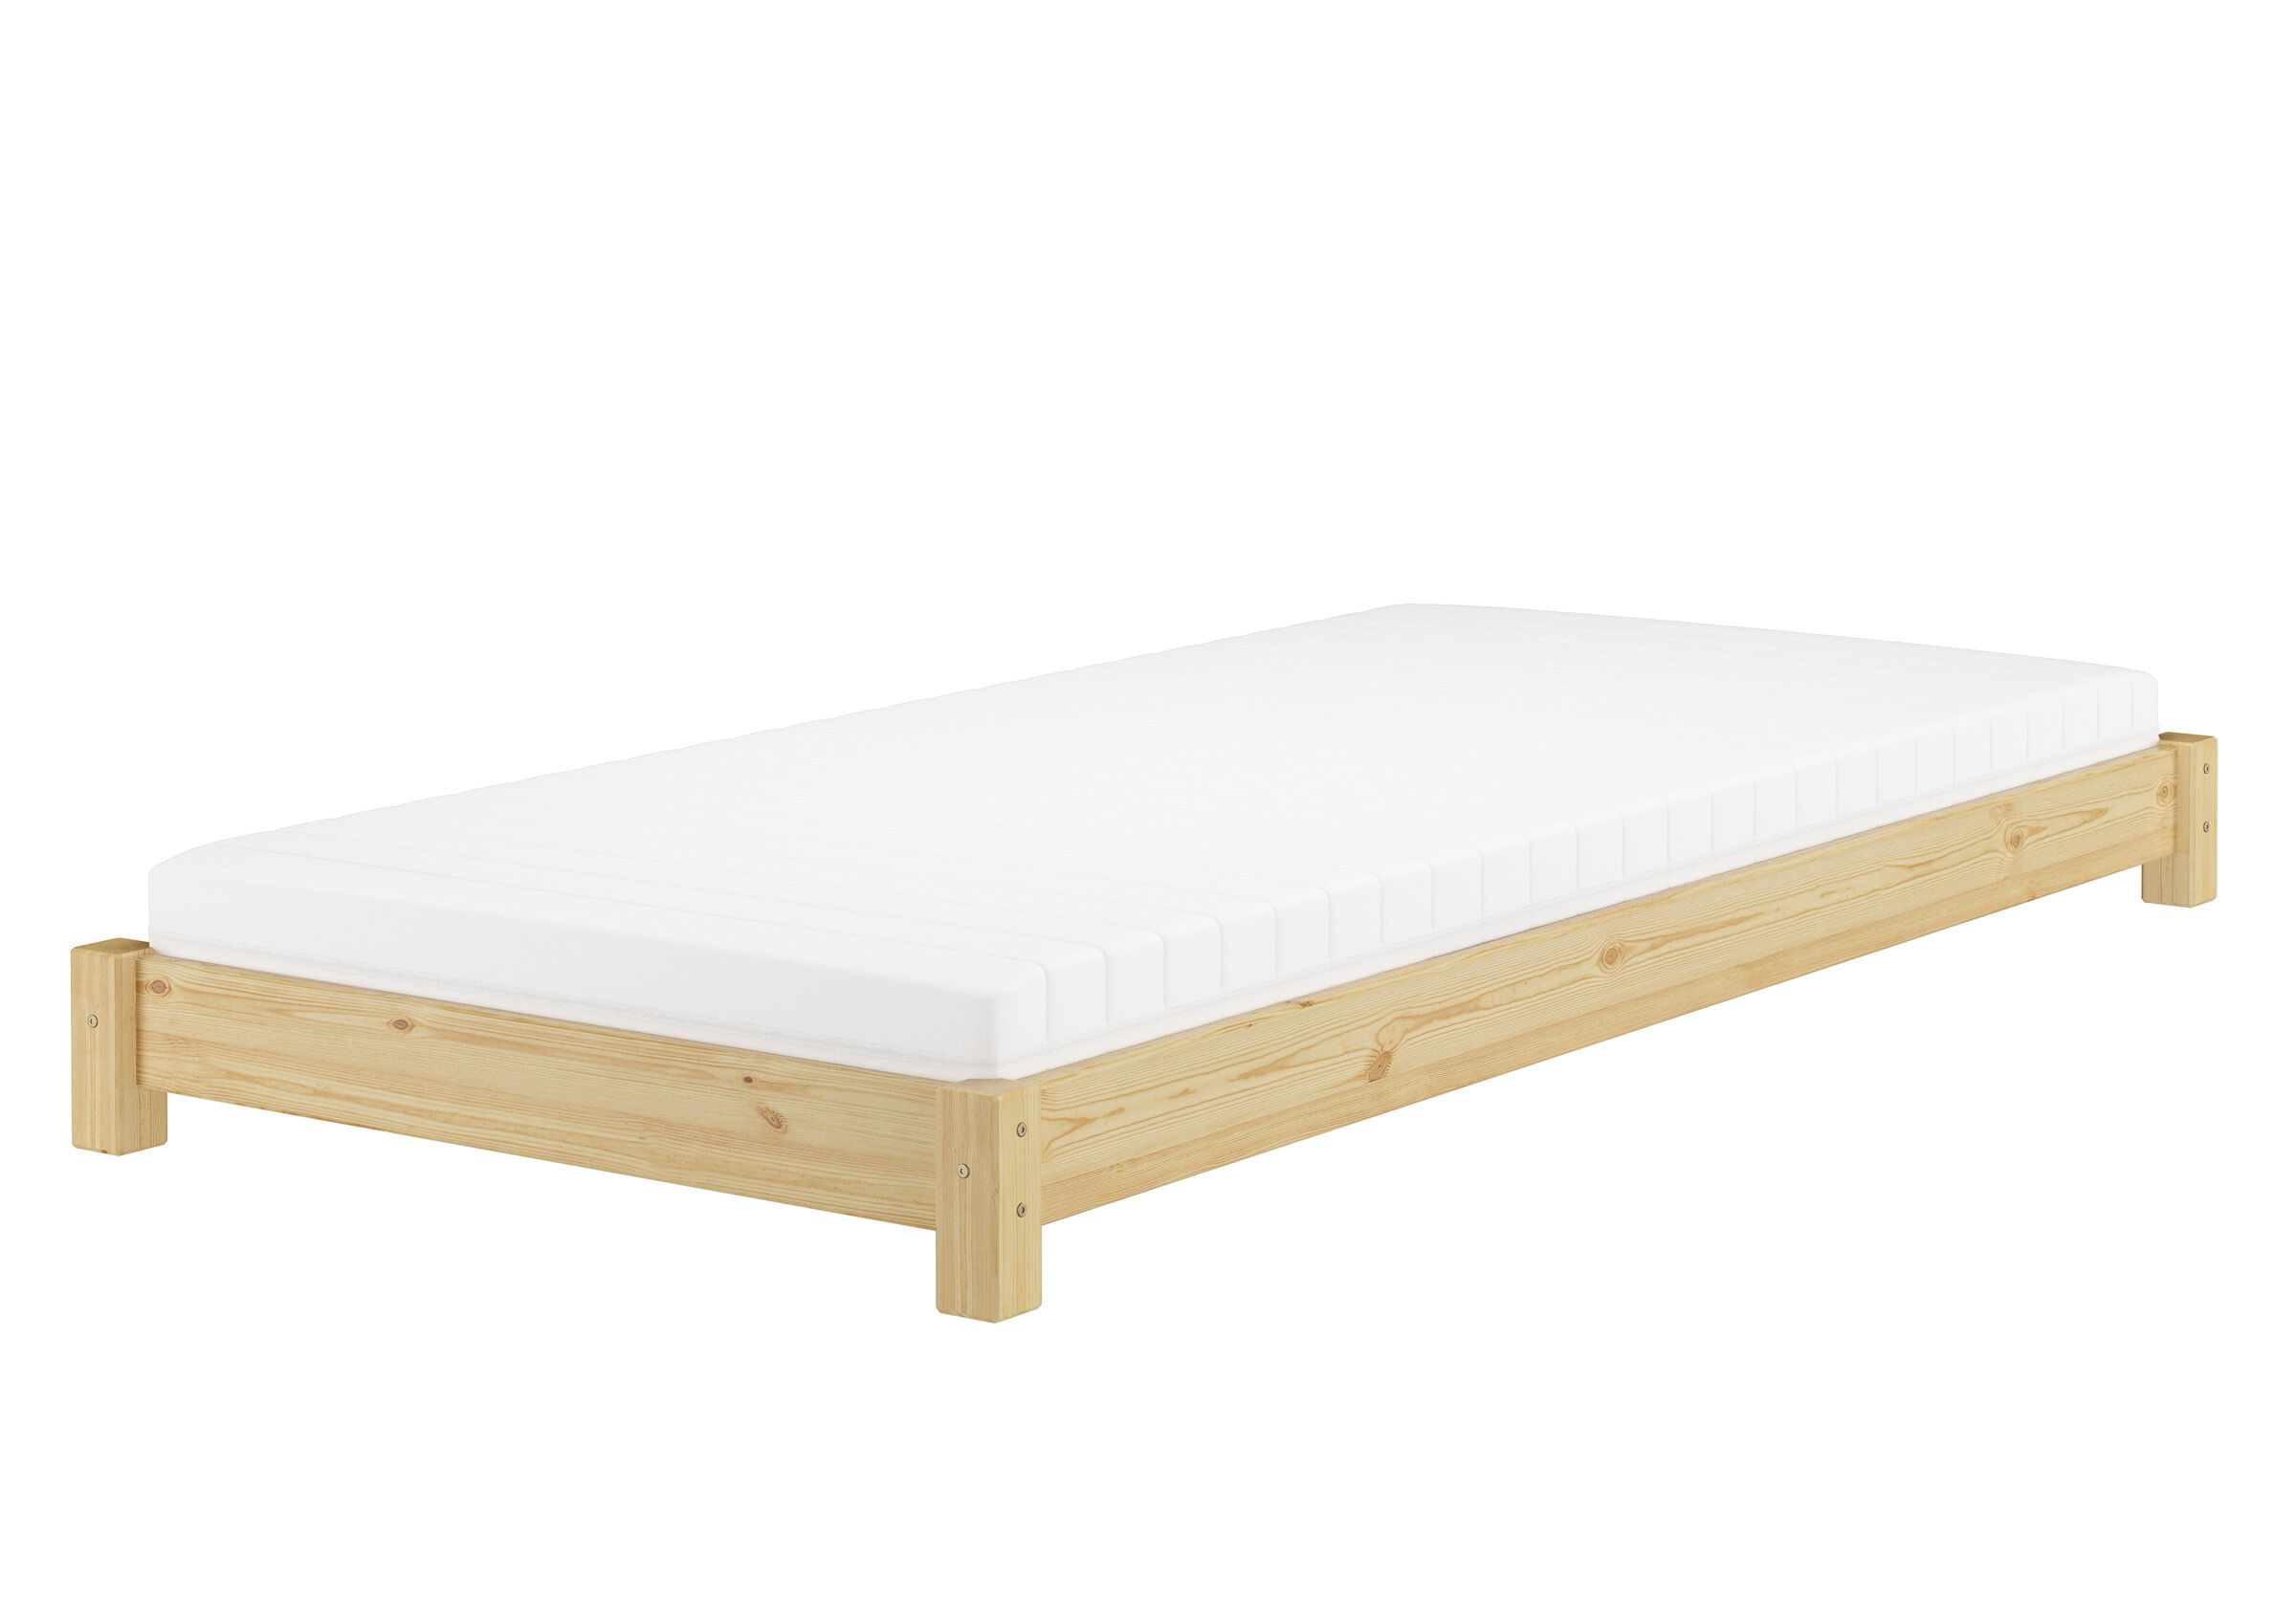 Tre varianti di letto singolo futon molto basso 80x200 in pino massello V-60.51-08